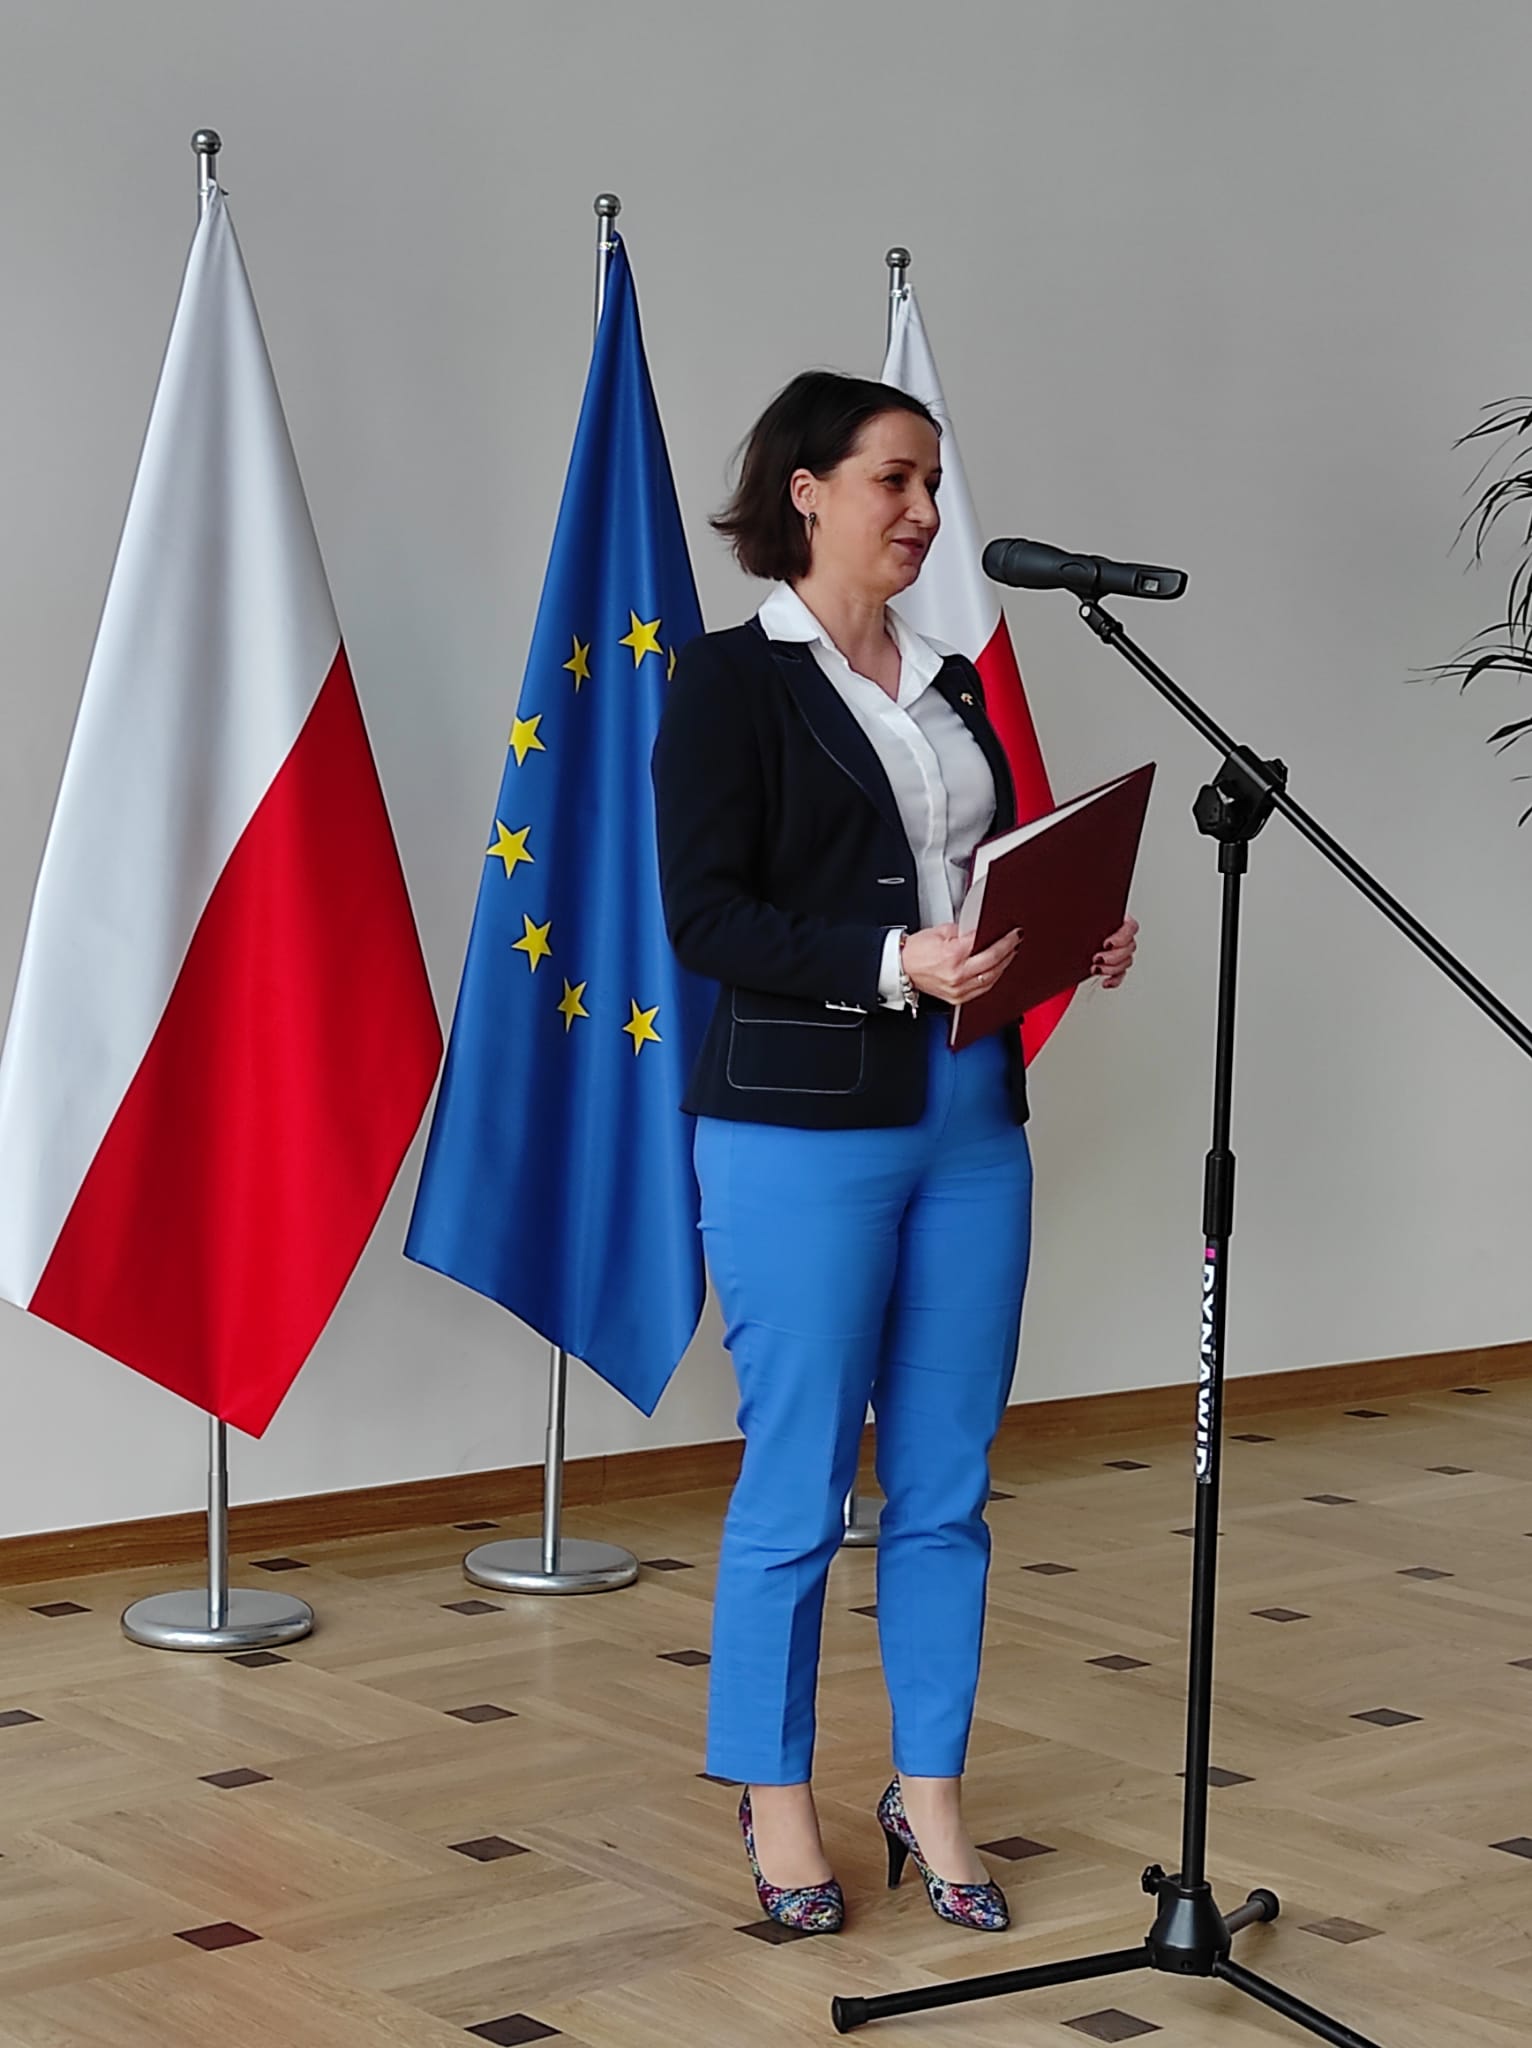 Elegancko ubrana kobieta stoi stoi przed mikrofonem, trzymając w ręku brązową kopertówkę. Za nią znajudją się dwie biało-czerwone flagii pomiędzy którymi znajuje się flaga flaga Unii Europejskiej.